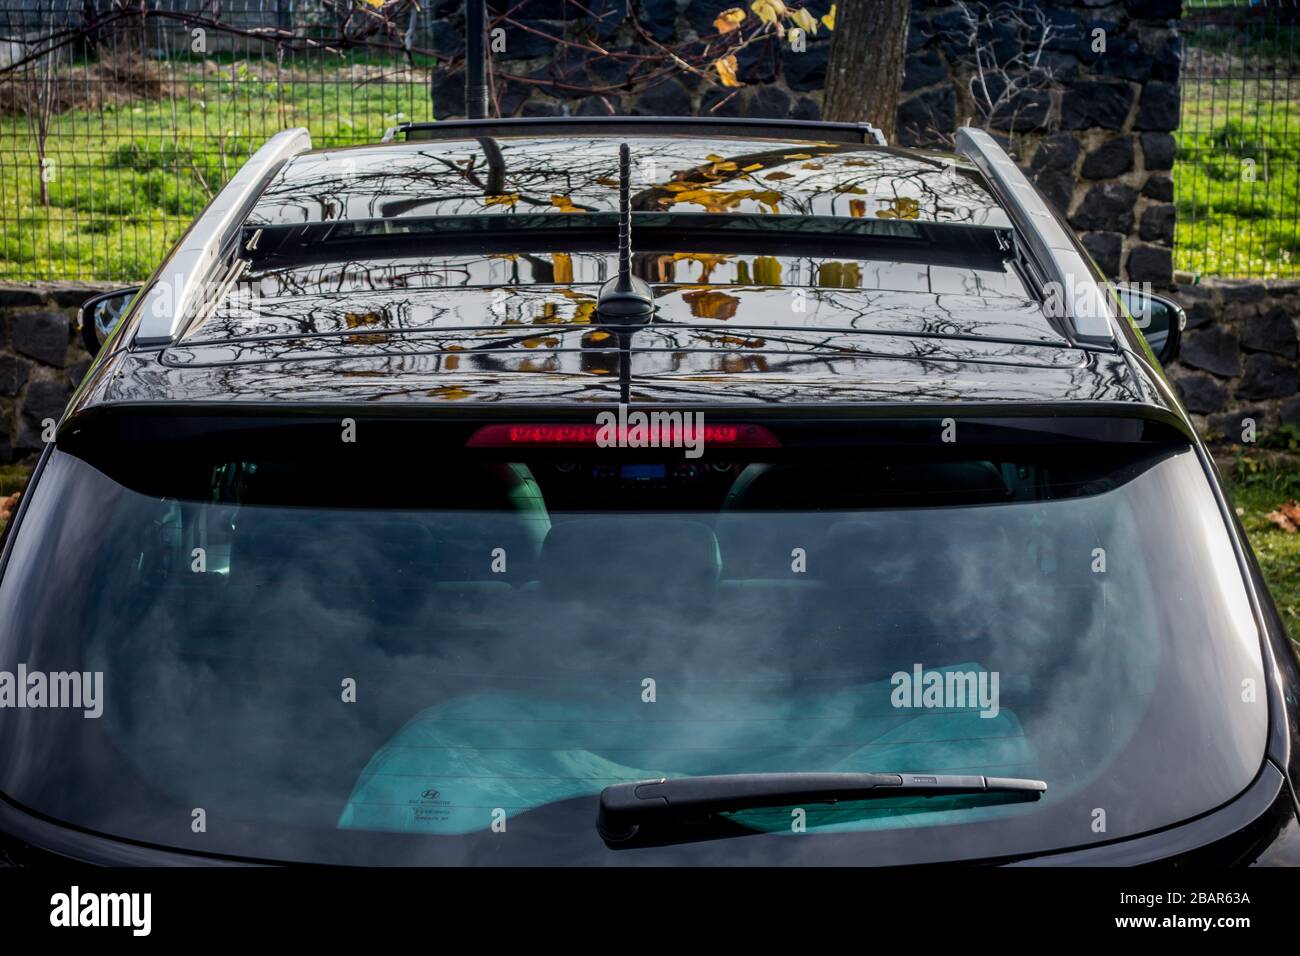 Sonnenrollo an der Scheibe der hinteren Tür der Auto Farbe schwarz Close-up  schützt vor Sonnenstrahlen texturierte Doppel Gitter aus einem speziellen  Material gefertigt Stockfotografie - Alamy